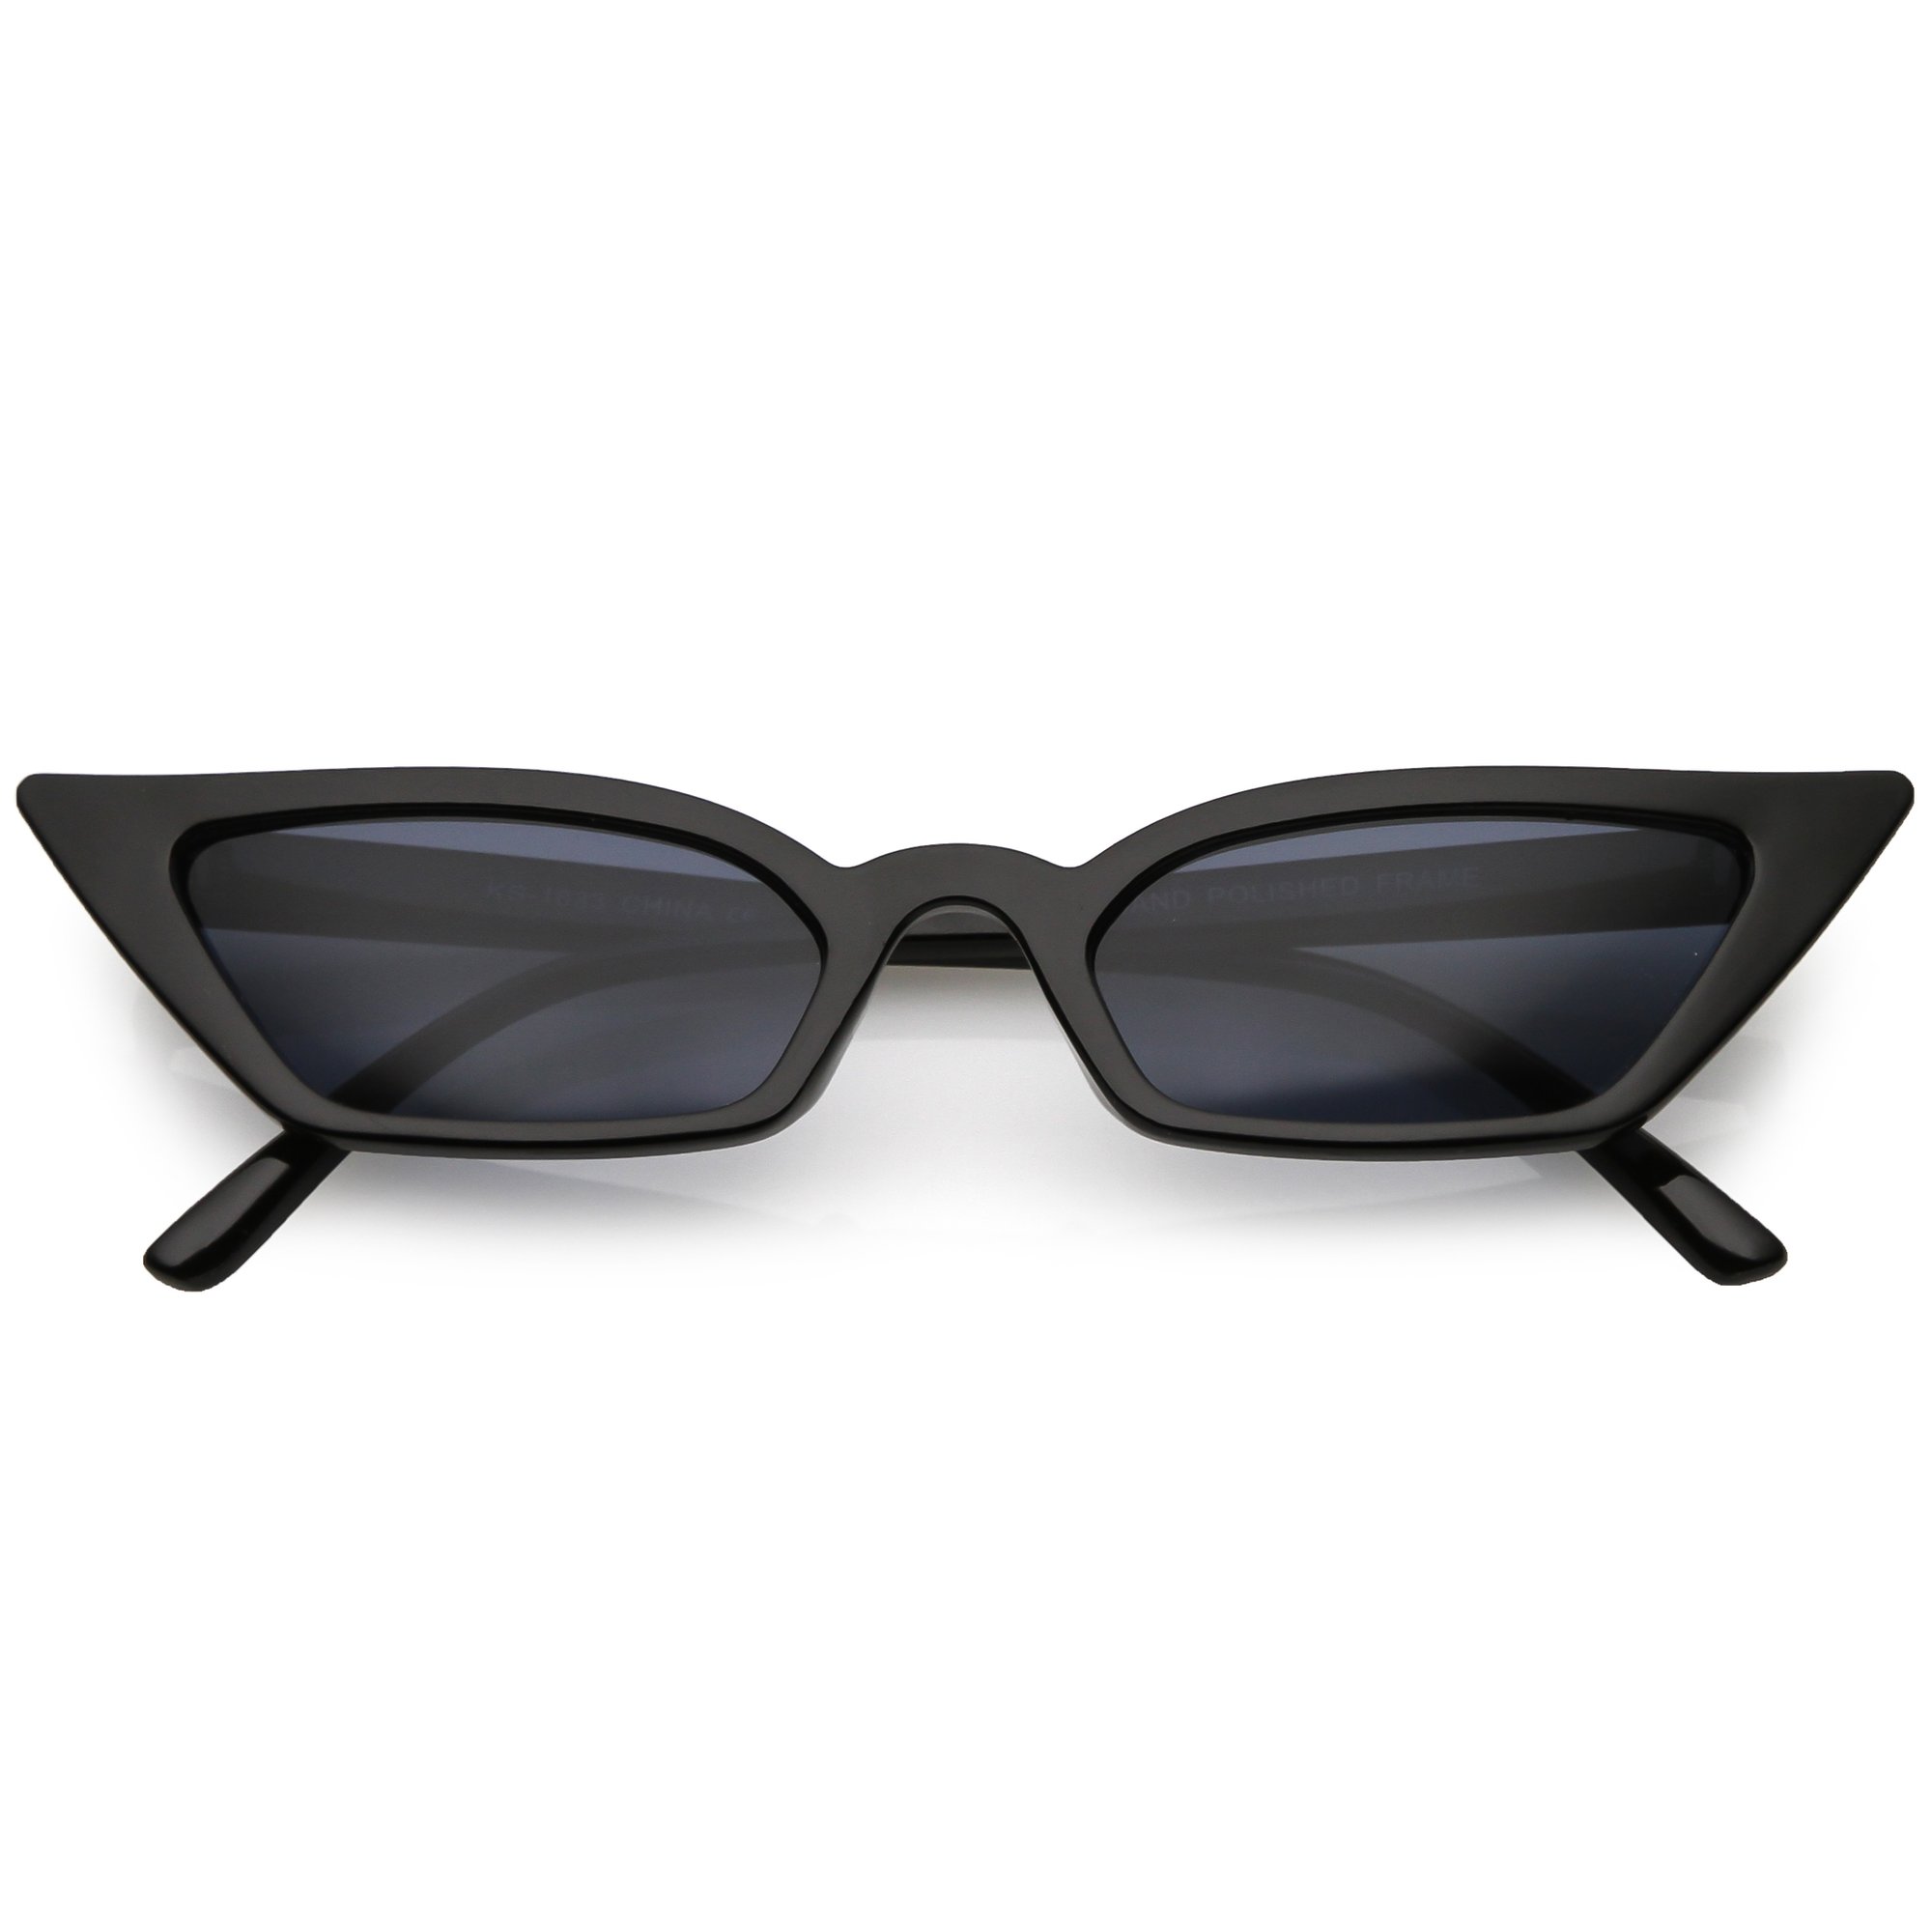 Women's 90's Thin Retro Pointed Cat Eye Sunglasses - zeroUV